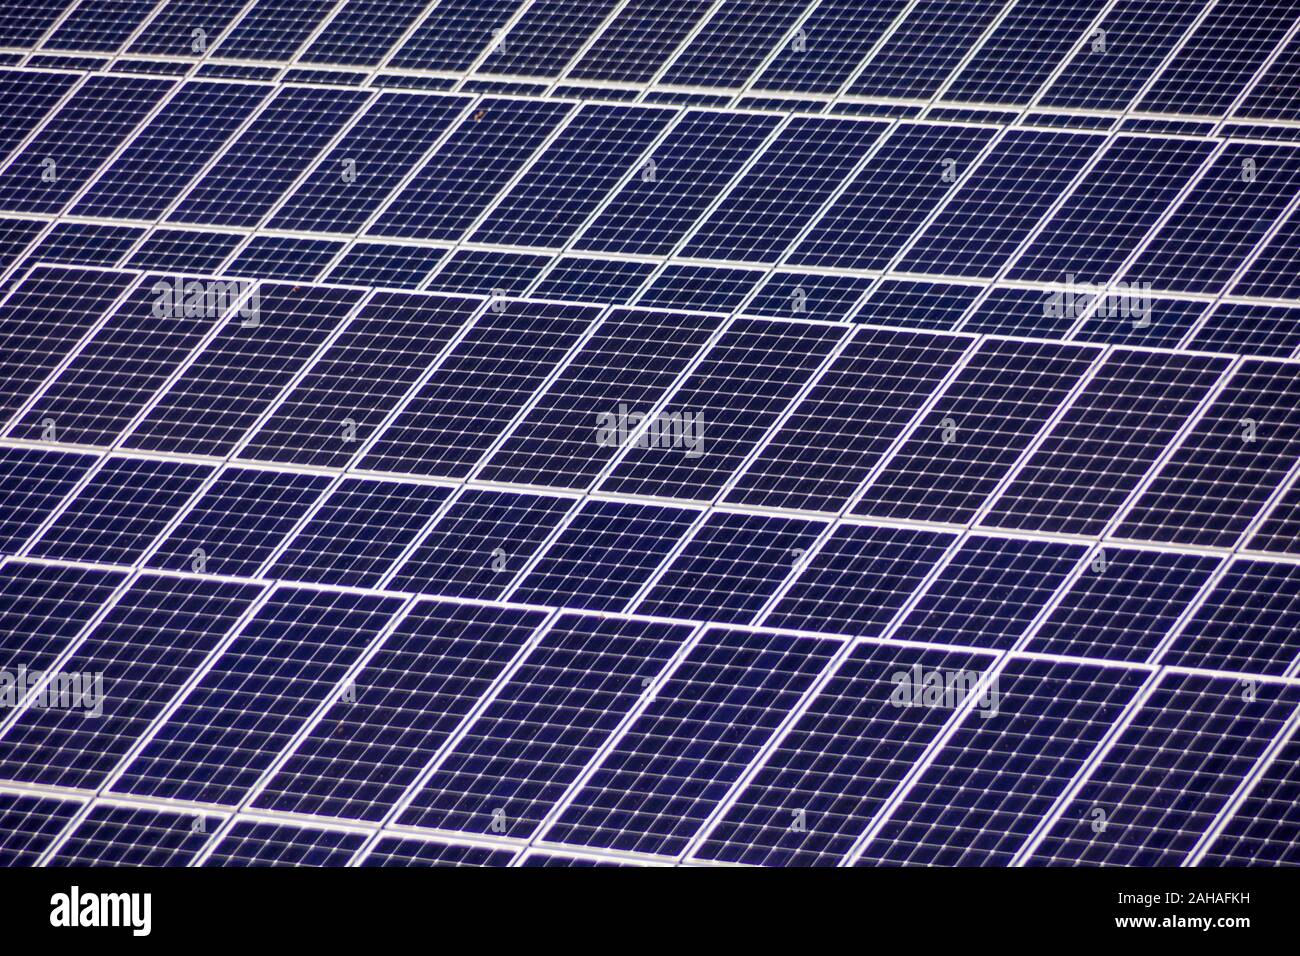 Solarzellen für die Gewinnung von Strom durch die Sonnenenergie eines Solarkraftwerkes. Alternative und umweltfreundliche Energie aus Sonnenkraft Stockfoto